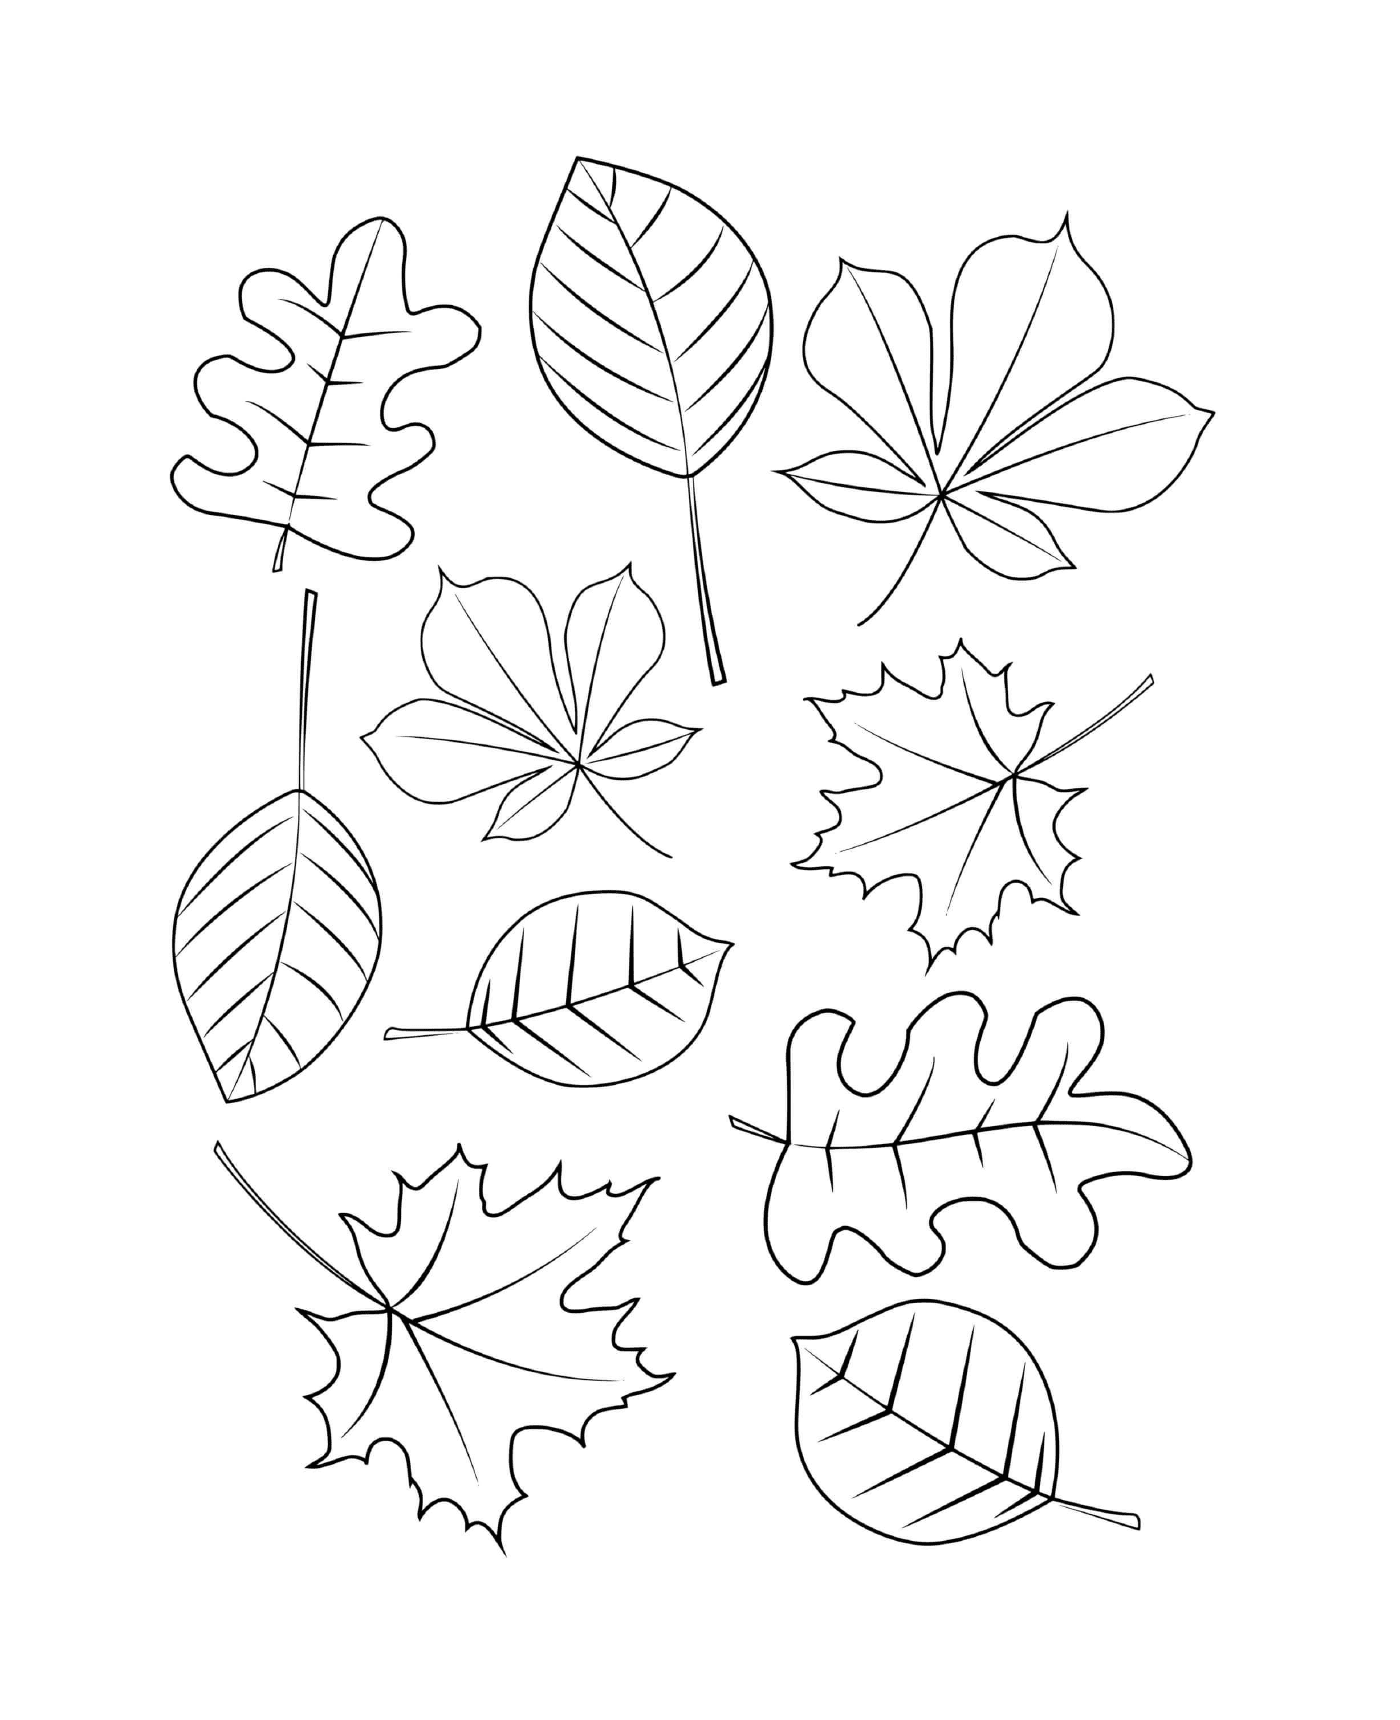   Différents types de feuilles dessinées sur papier 